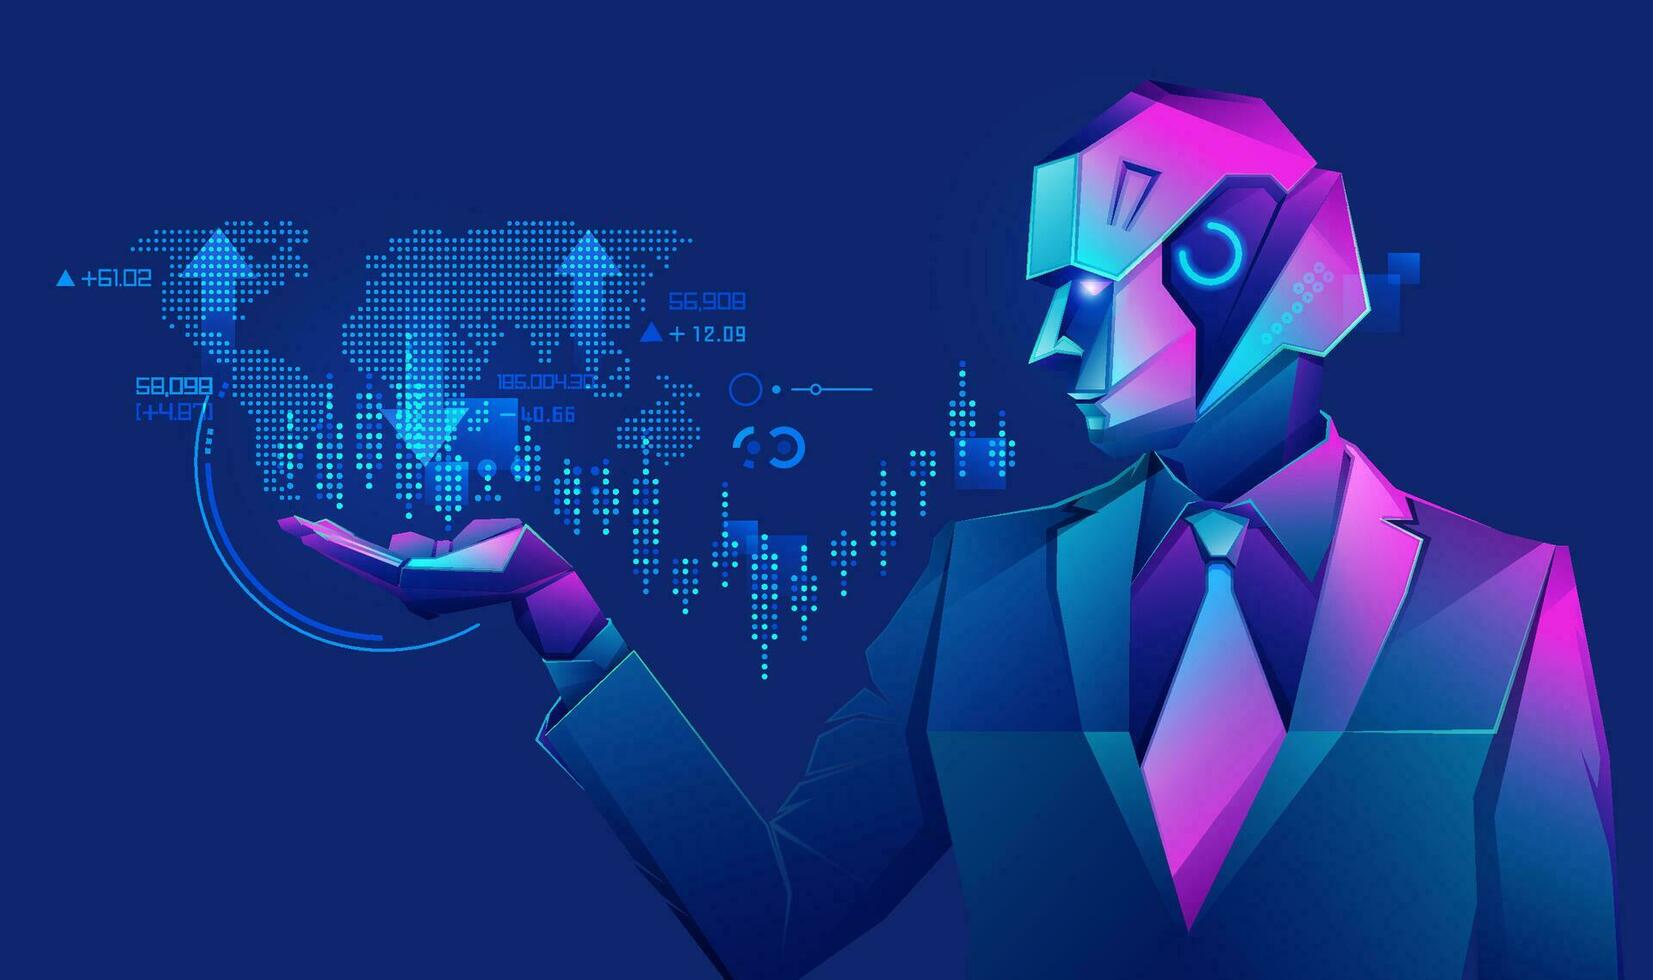 concept van robot handel technologie, grafisch van robot zakenman gebruik makend van FinTech koppel gepresenteerd in cyberpunk karakter stijl vector